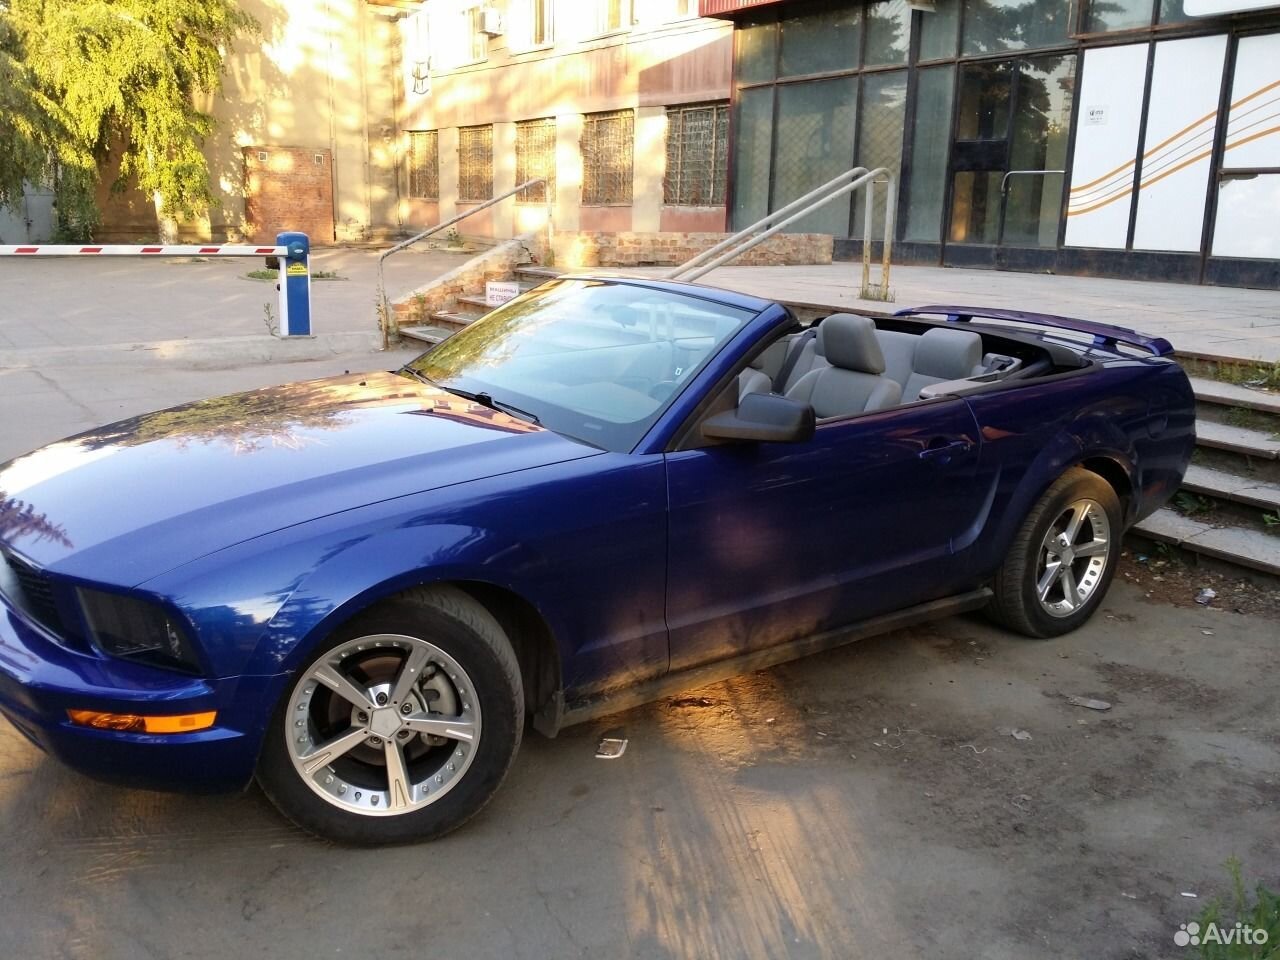 Авито саратов иномарки. Ford Mustang 4.0 at голубой. Форд Мустанг Саратов. Форд Мустанг кабриолет 2005 года. Дорогие машины в Саратове.